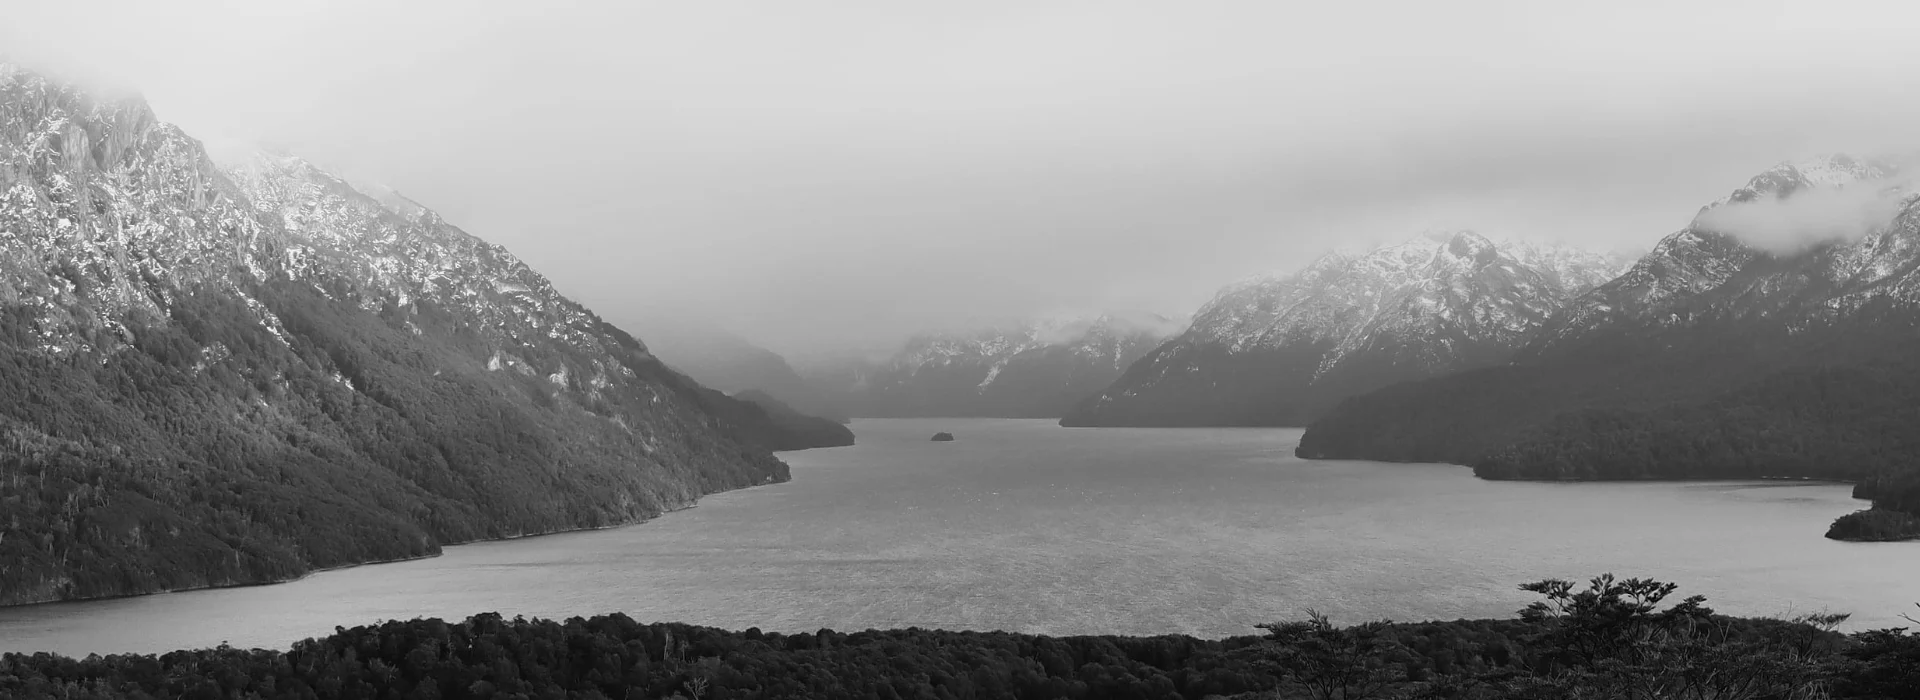 patagonia nahuel huapi lake